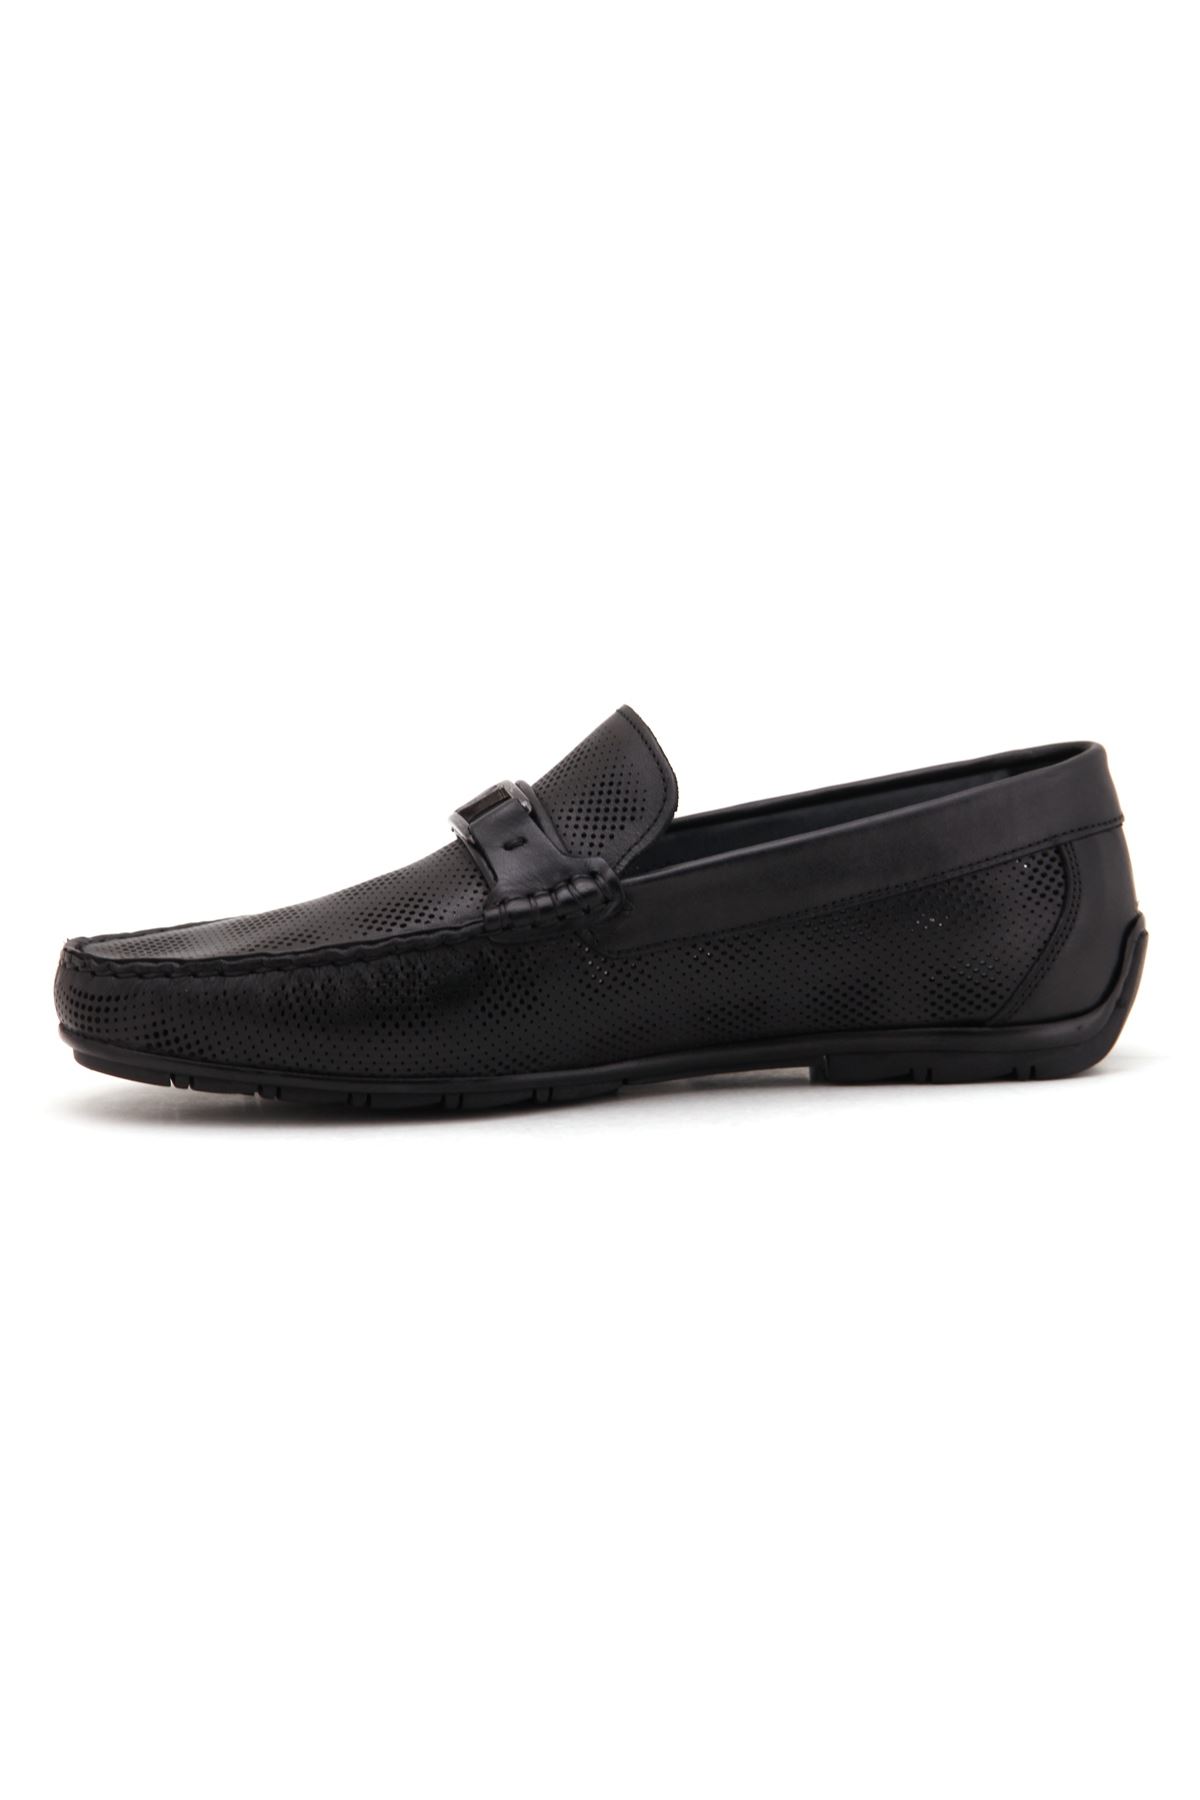 Marcomen 11087 Deri Günlük Erkek Ayakkabı - Siyah